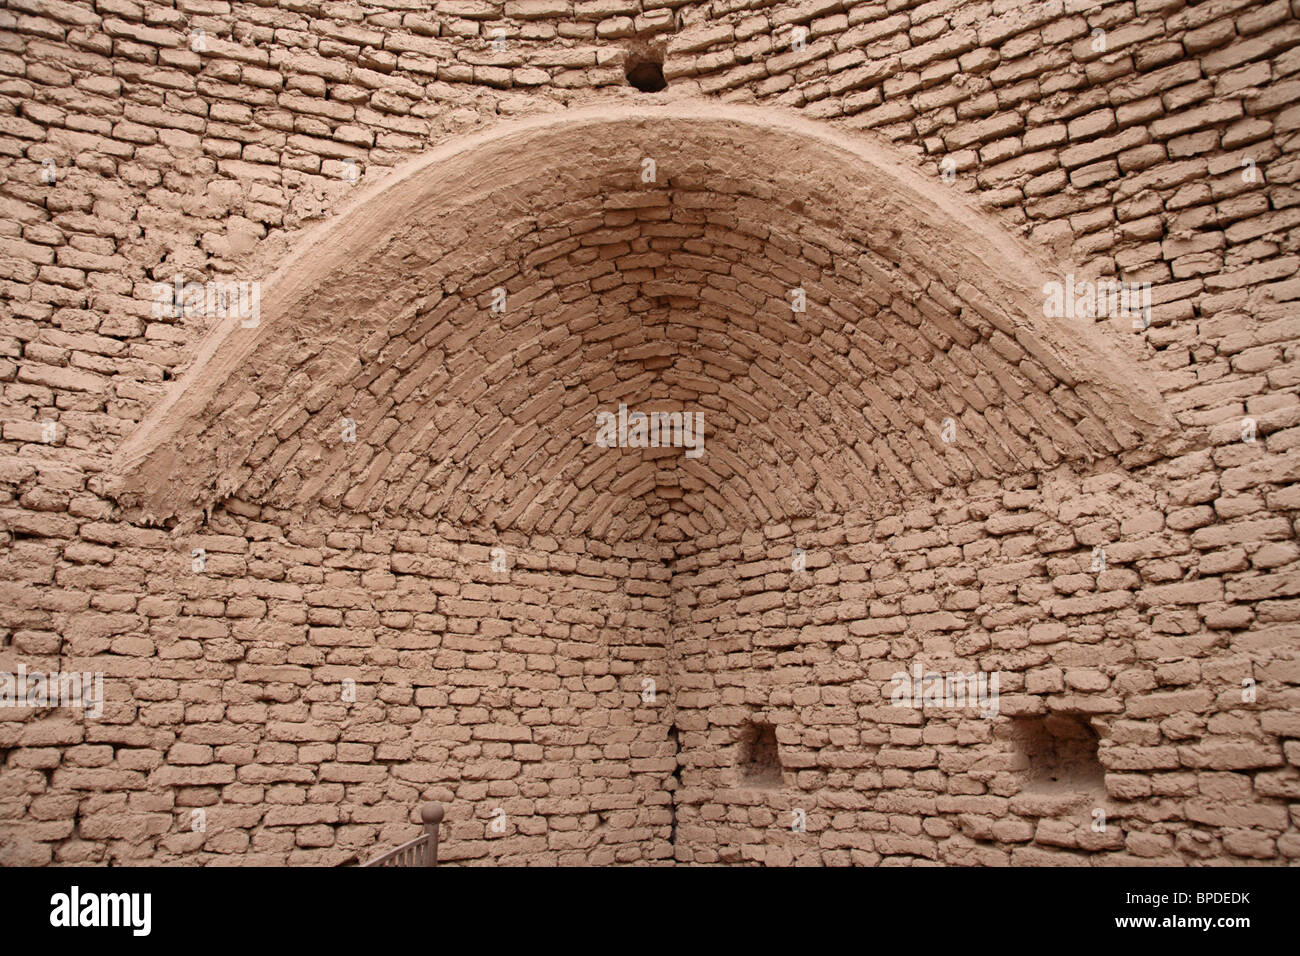 Un mur de brique de boue et arch dans les ruines de la ville antique de Jiaohe dans le désert du Takla Makan au Xinjiang, au nord ouest de la Chine. Banque D'Images